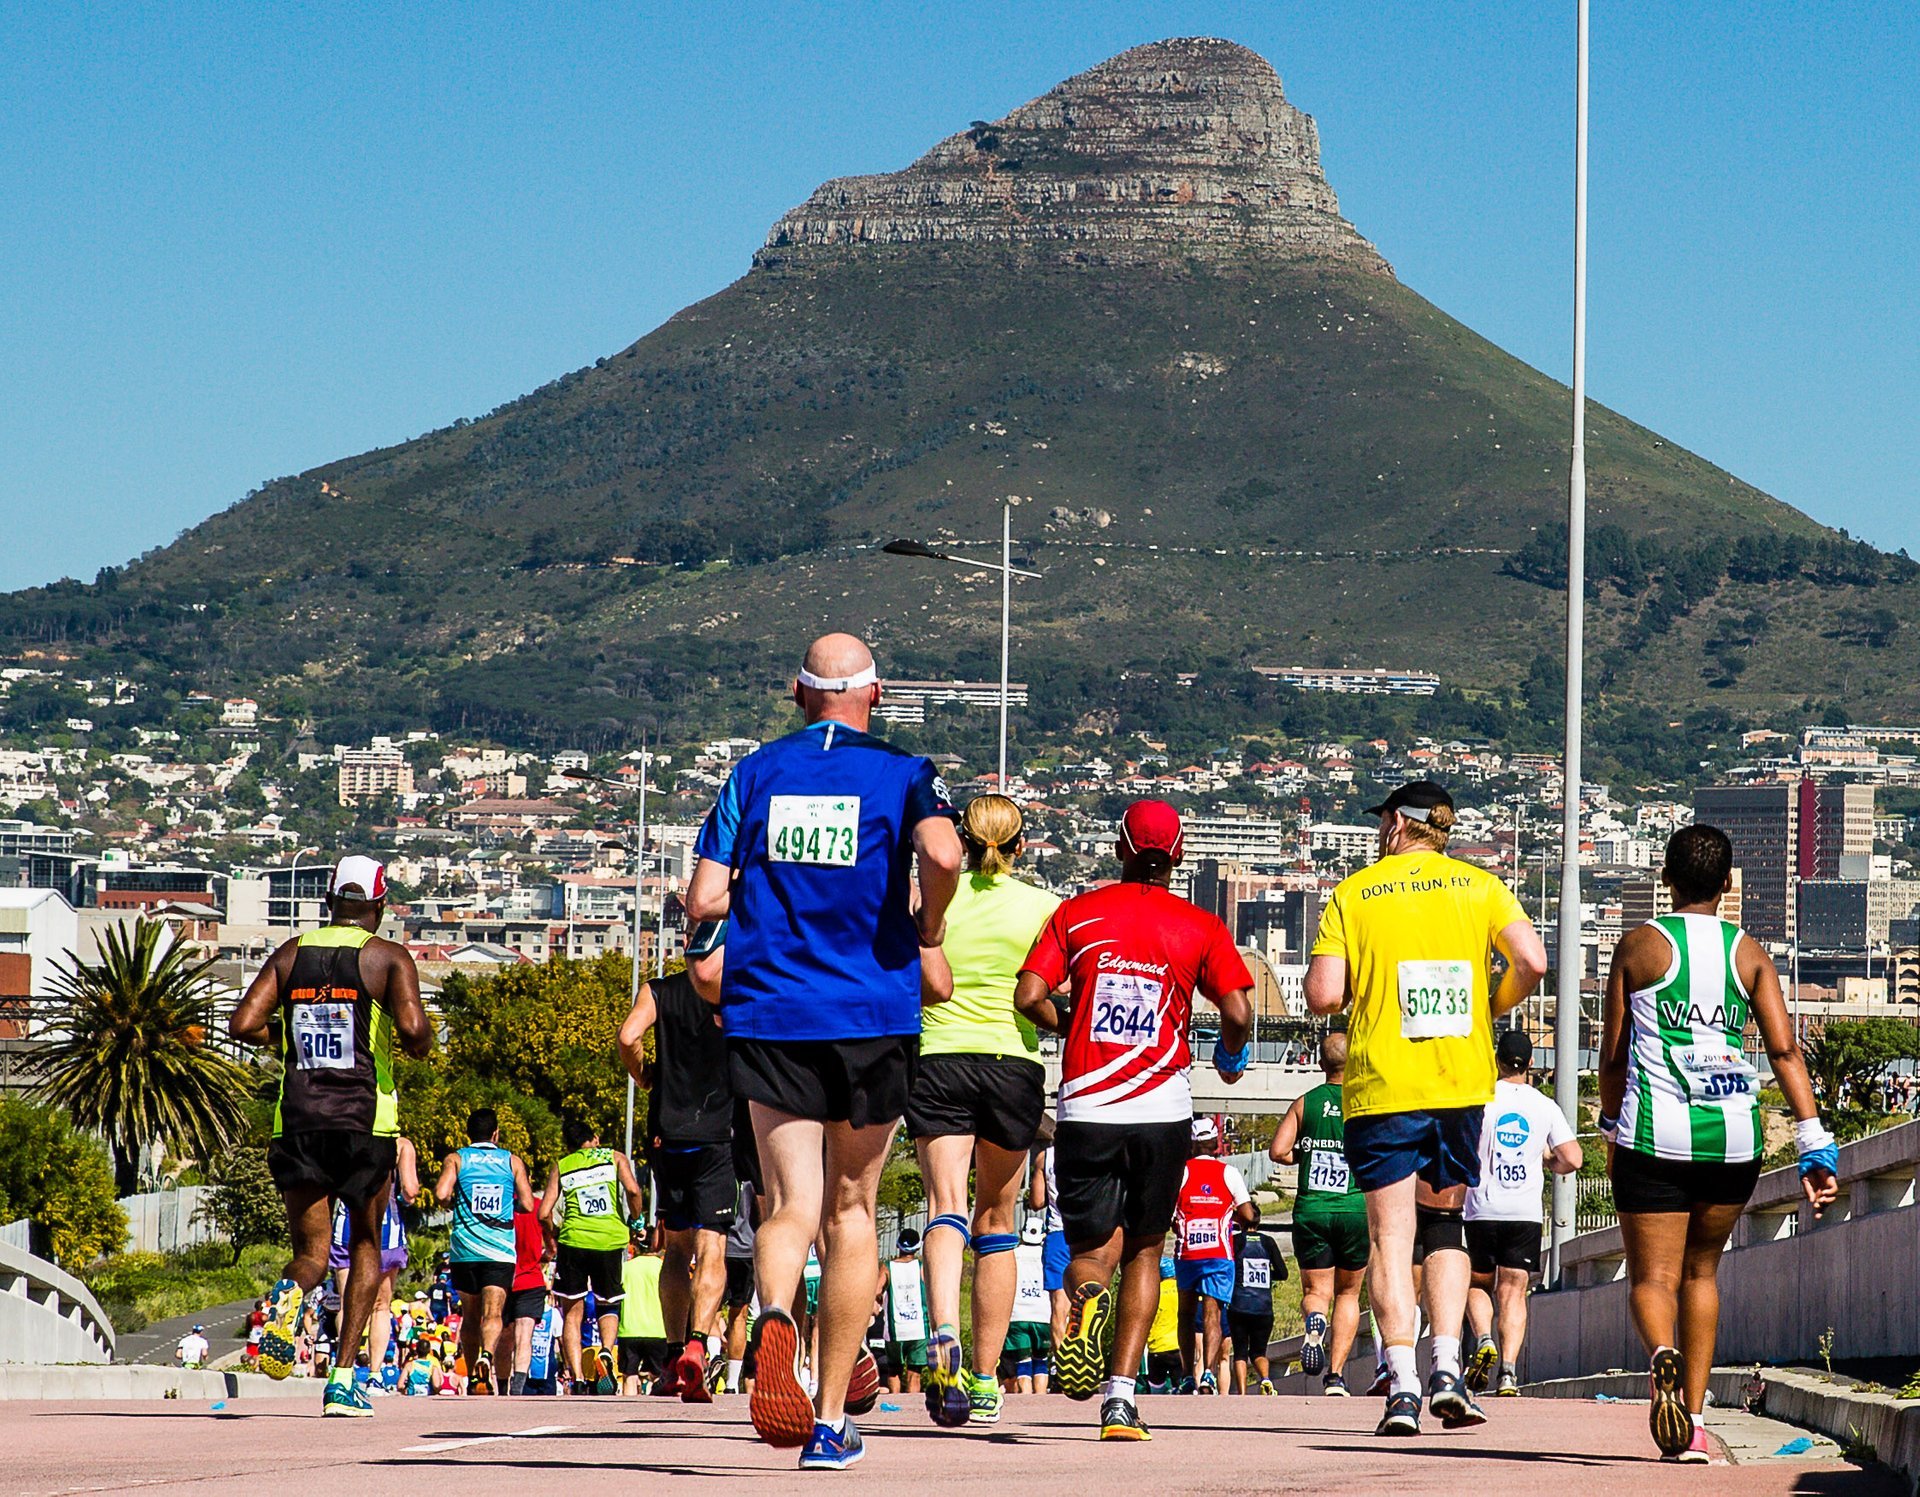 Sanlam-Marathon in Kapstadt